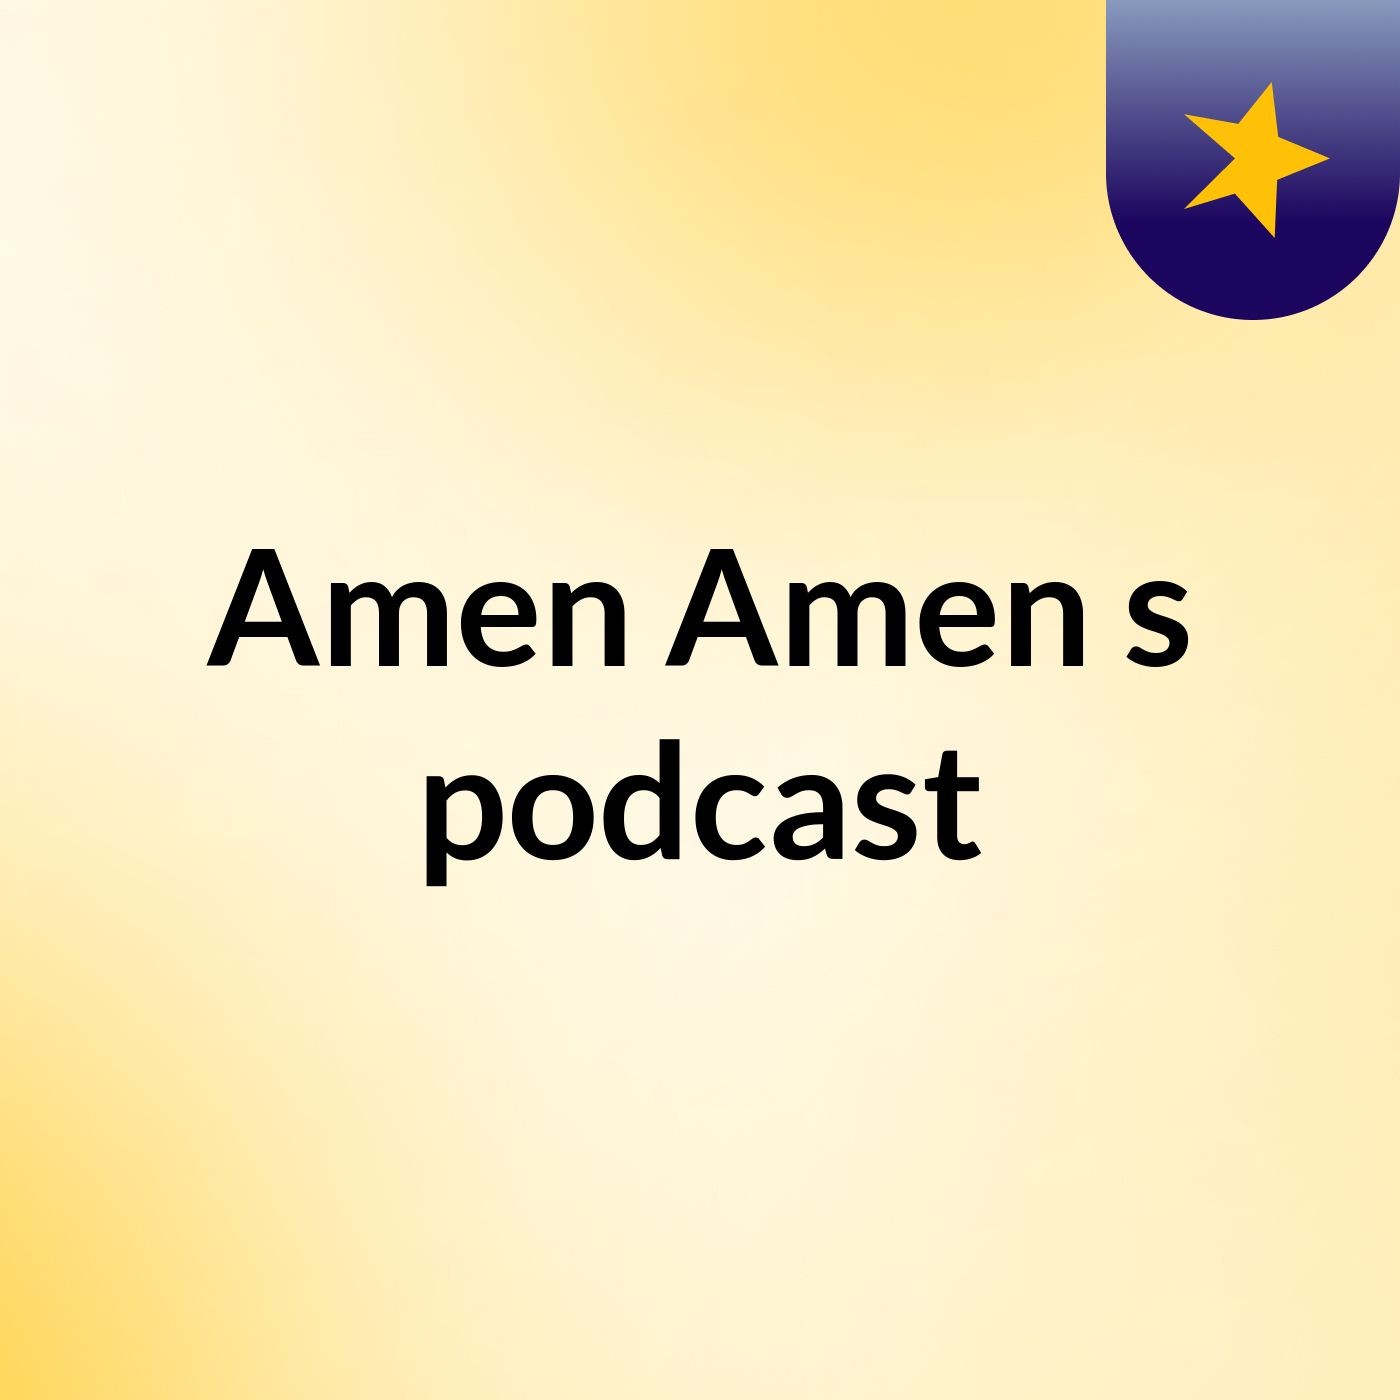 Amen Amen's podcast